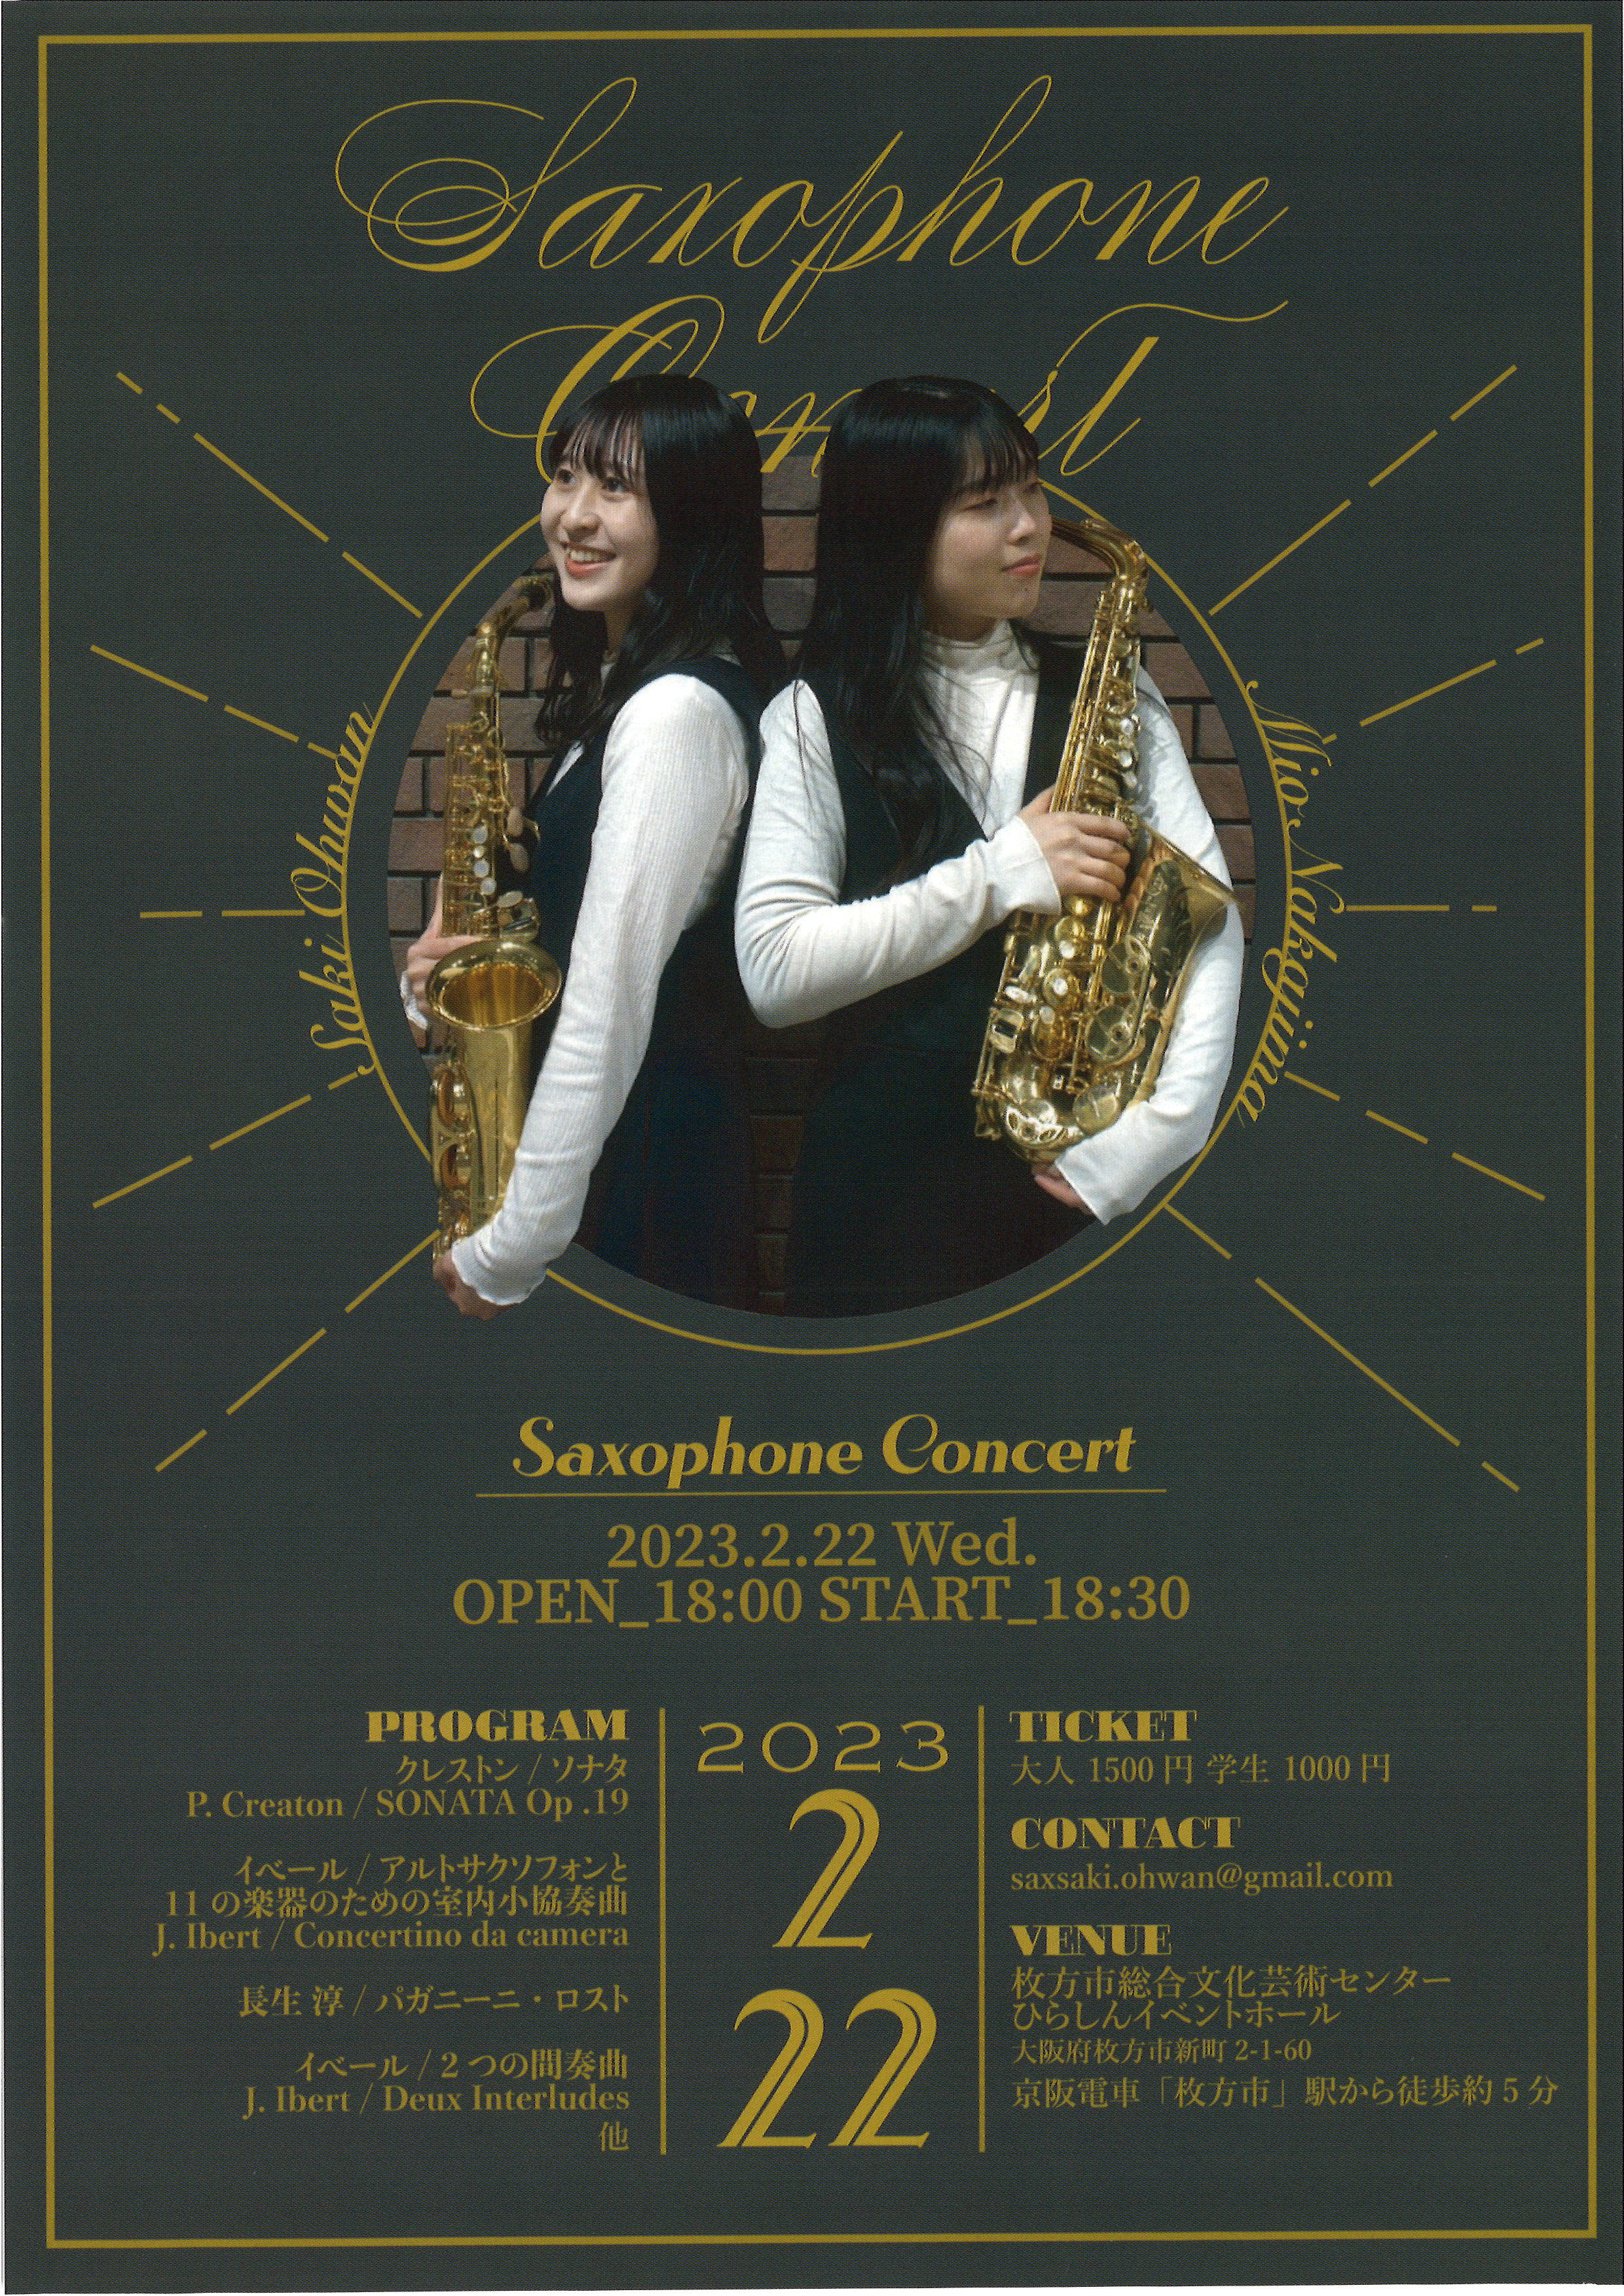 Saxophone Concert